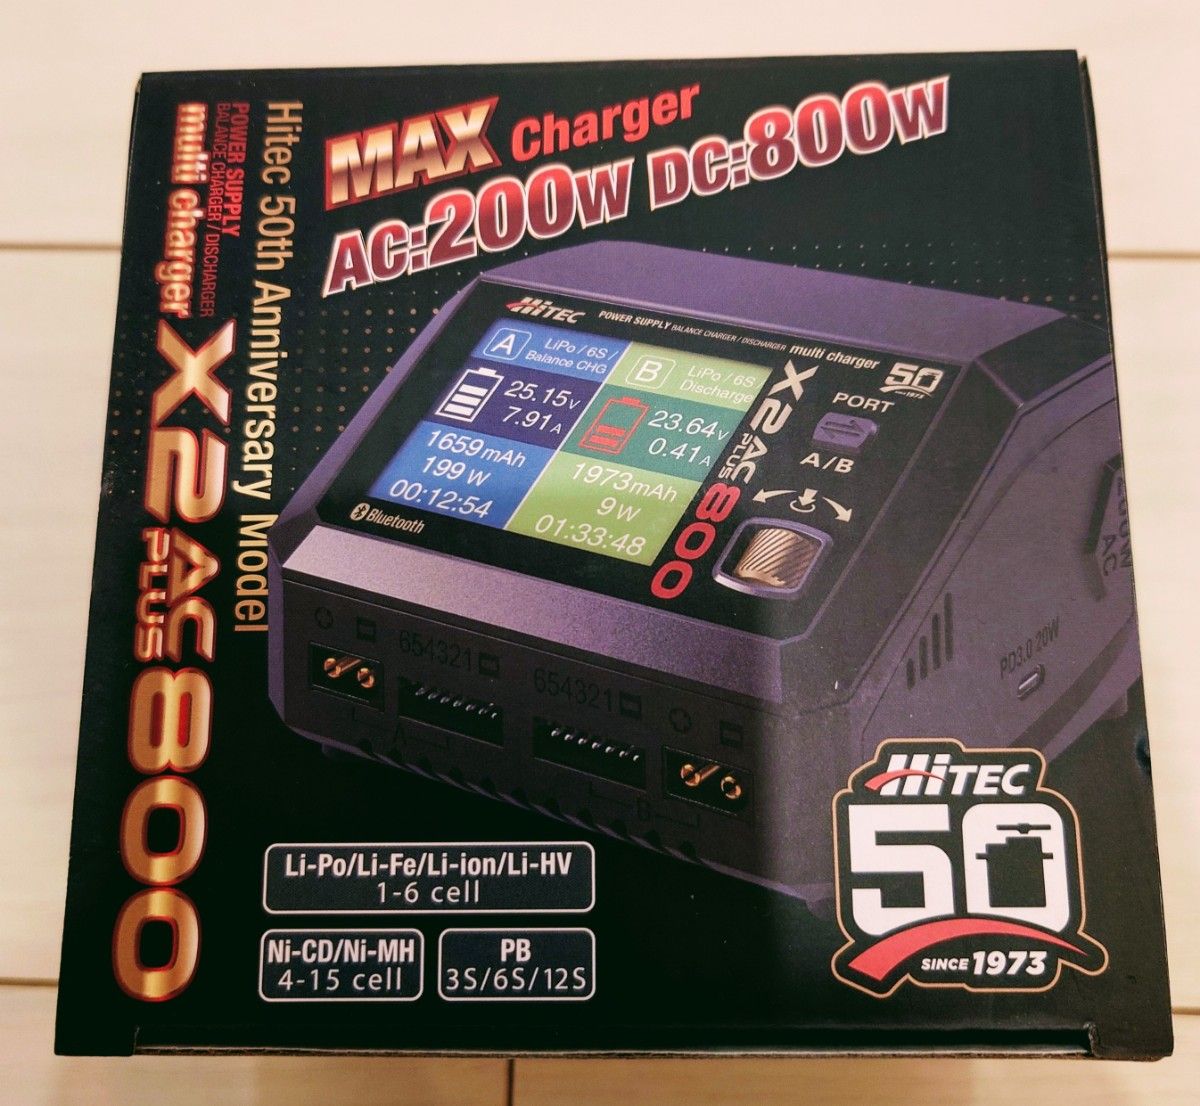 ハイテック AC/DC 充電器 Multi Charger X2 AC PLUS 800 50周年モデル.AD350放電器セット